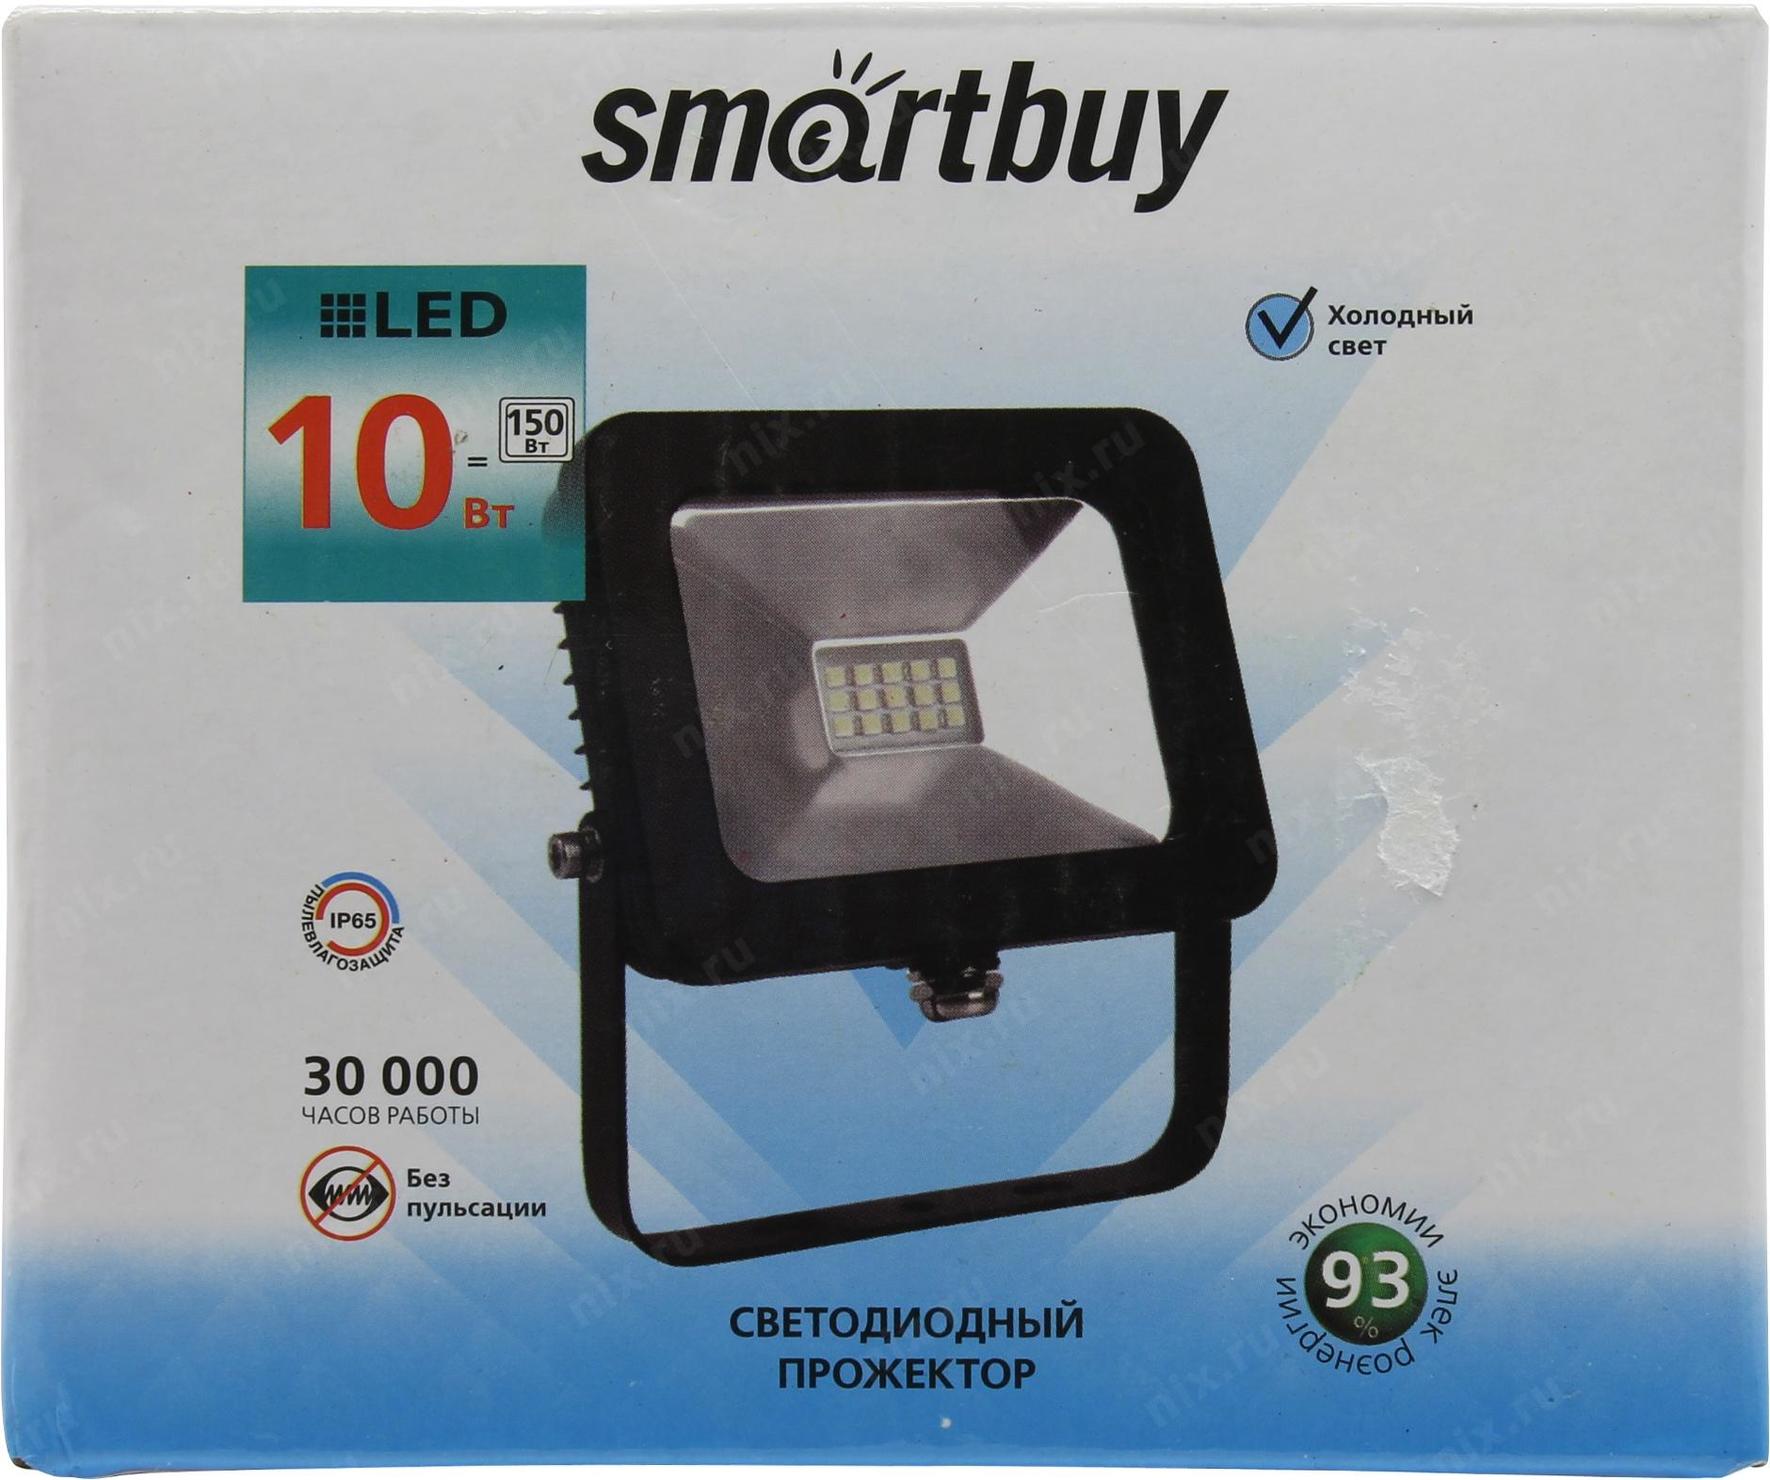 Прожекторы smartbuy